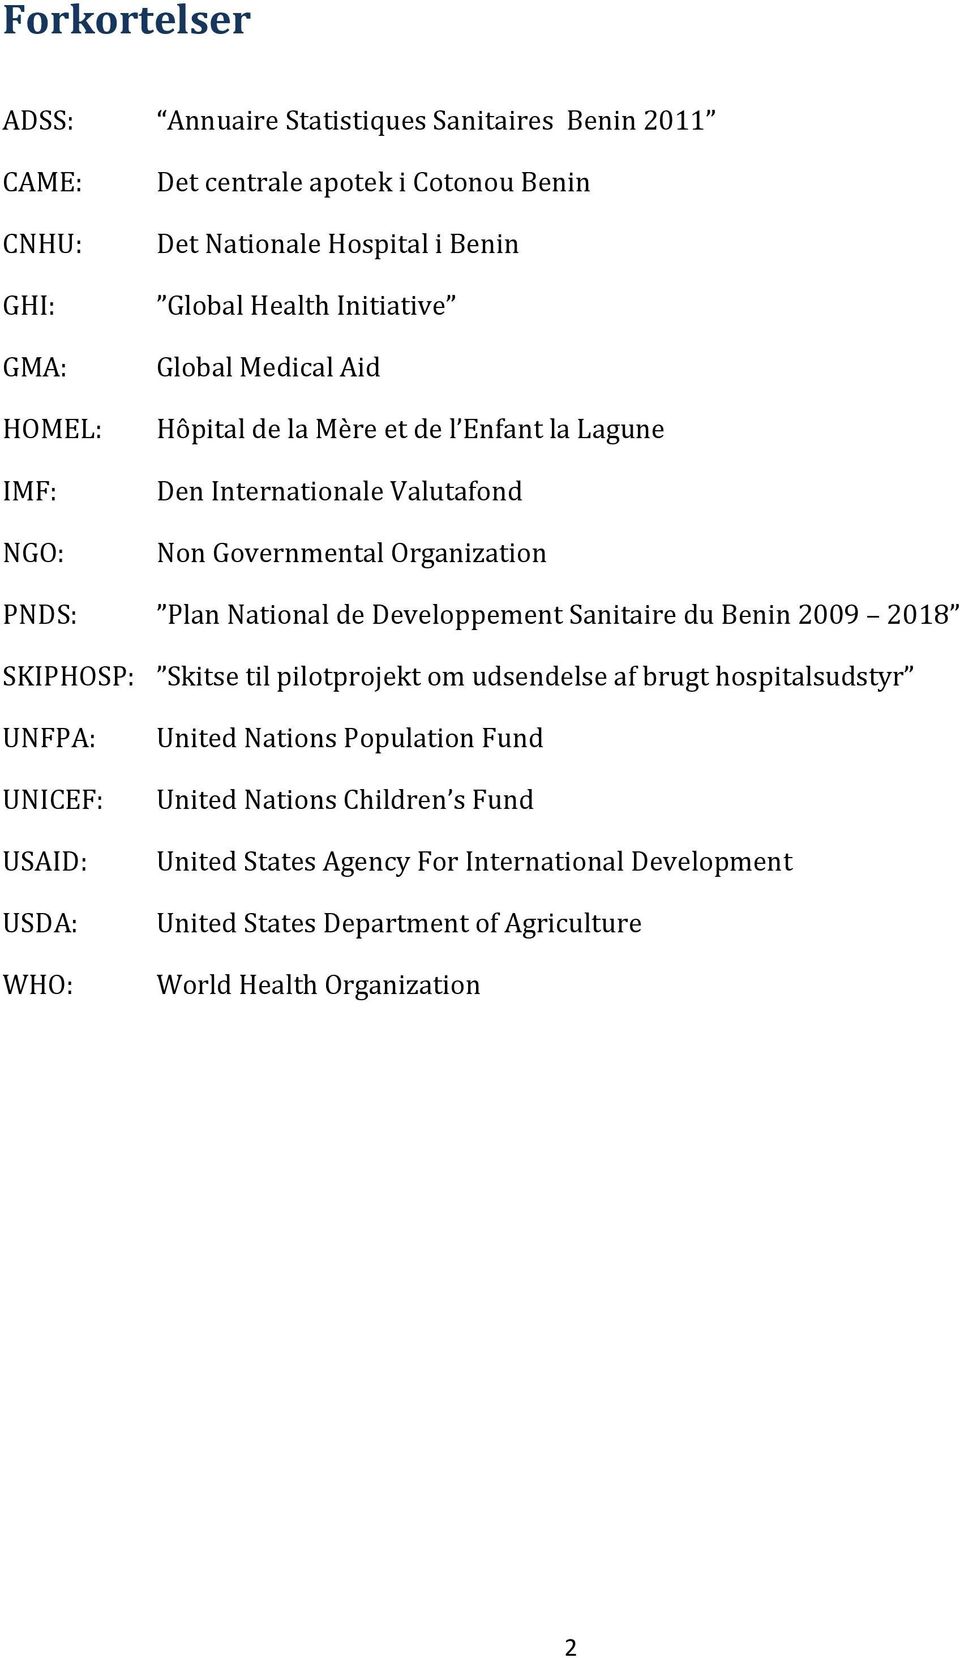 National de Developpement Sanitaire du Benin 2009 2018 SKIPHOSP: Skitse til pilotprojekt om udsendelse af brugt hospitalsudstyr UNFPA: UNICEF: USAID: USDA: WHO: United